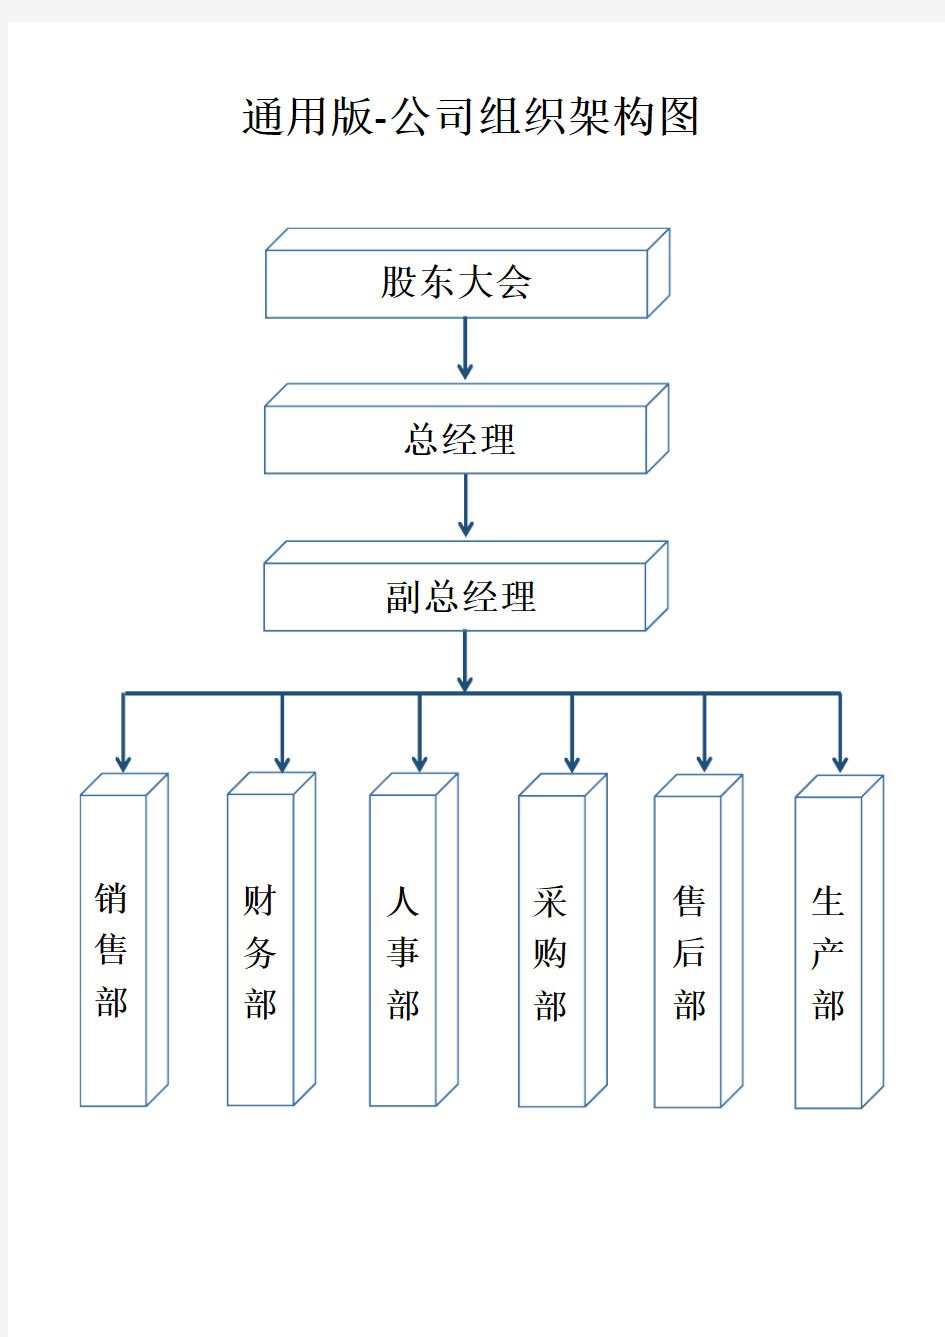 公司组织架构图模板 (1)